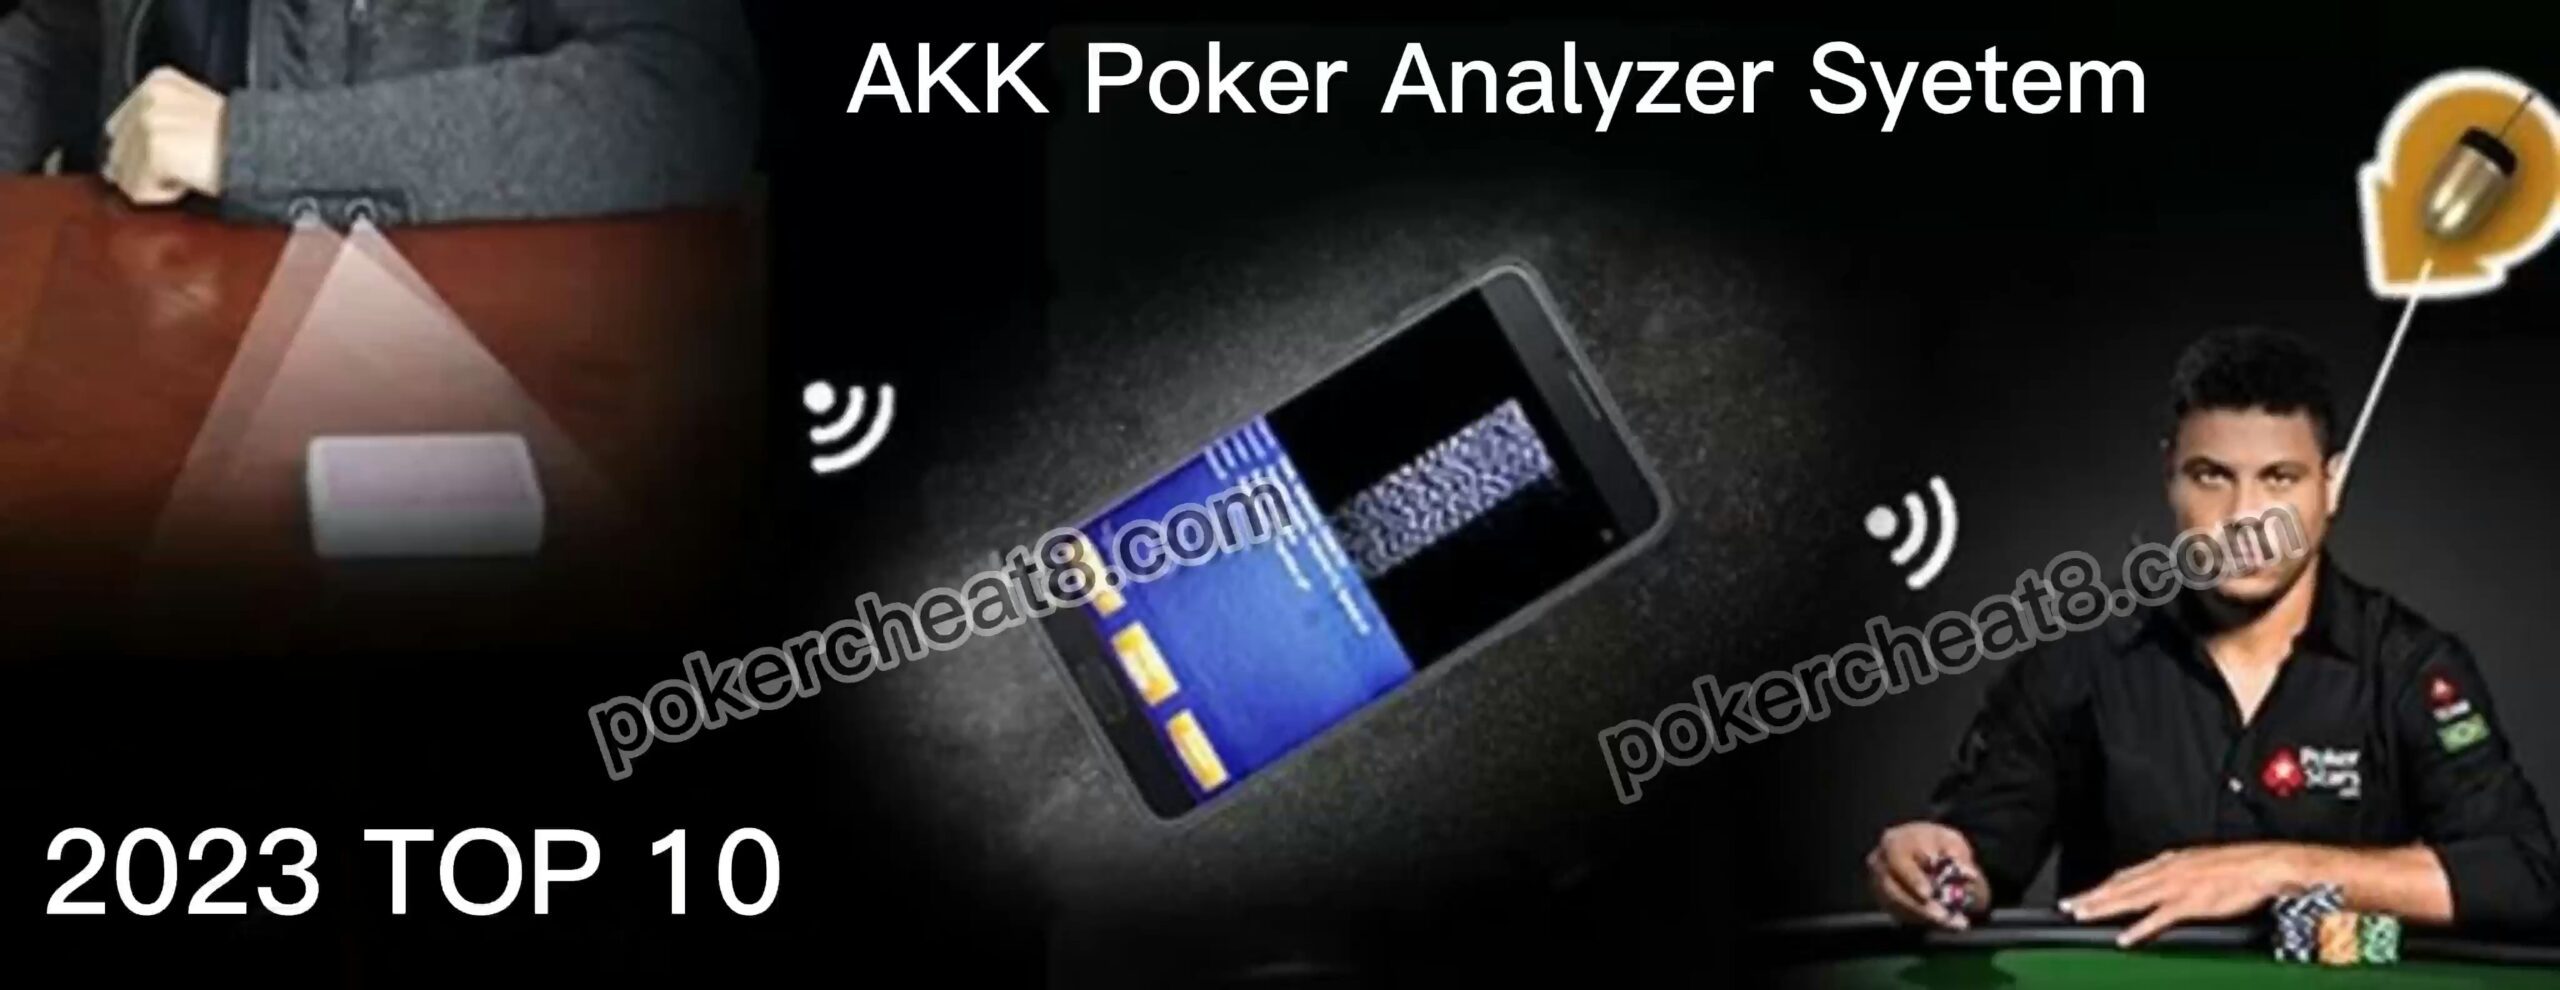 AKK Poker Analyzer Syetem scaled